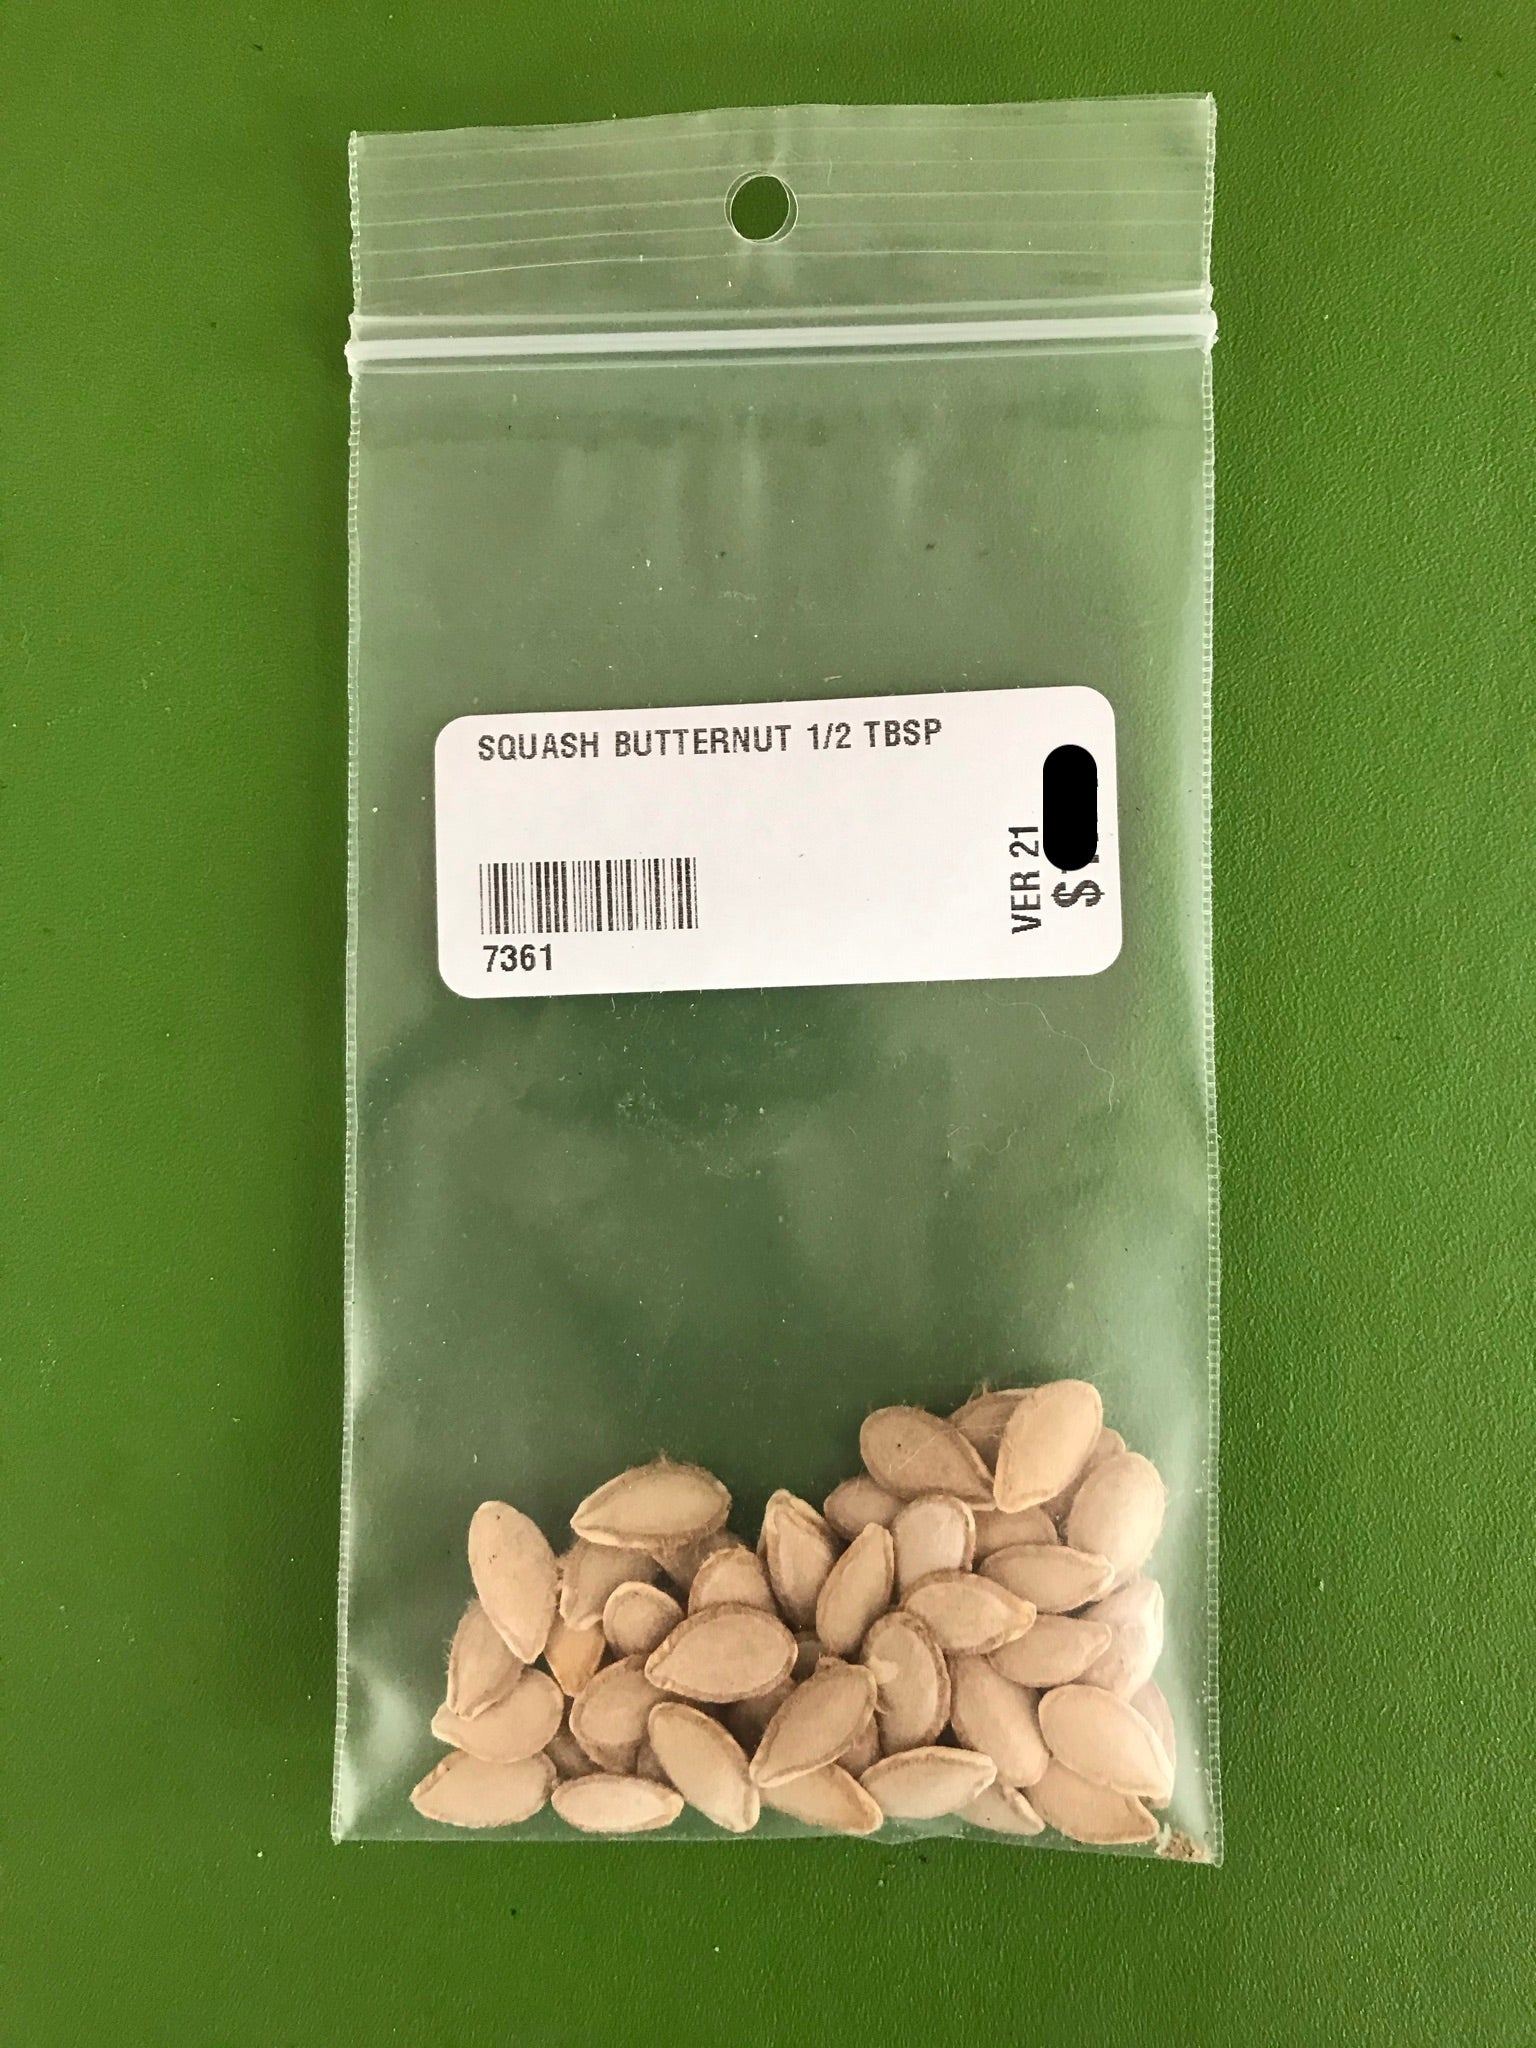 Waltham Butternut Squash Seeds (Winter Type) - 1/2 Tbsp - Bulk